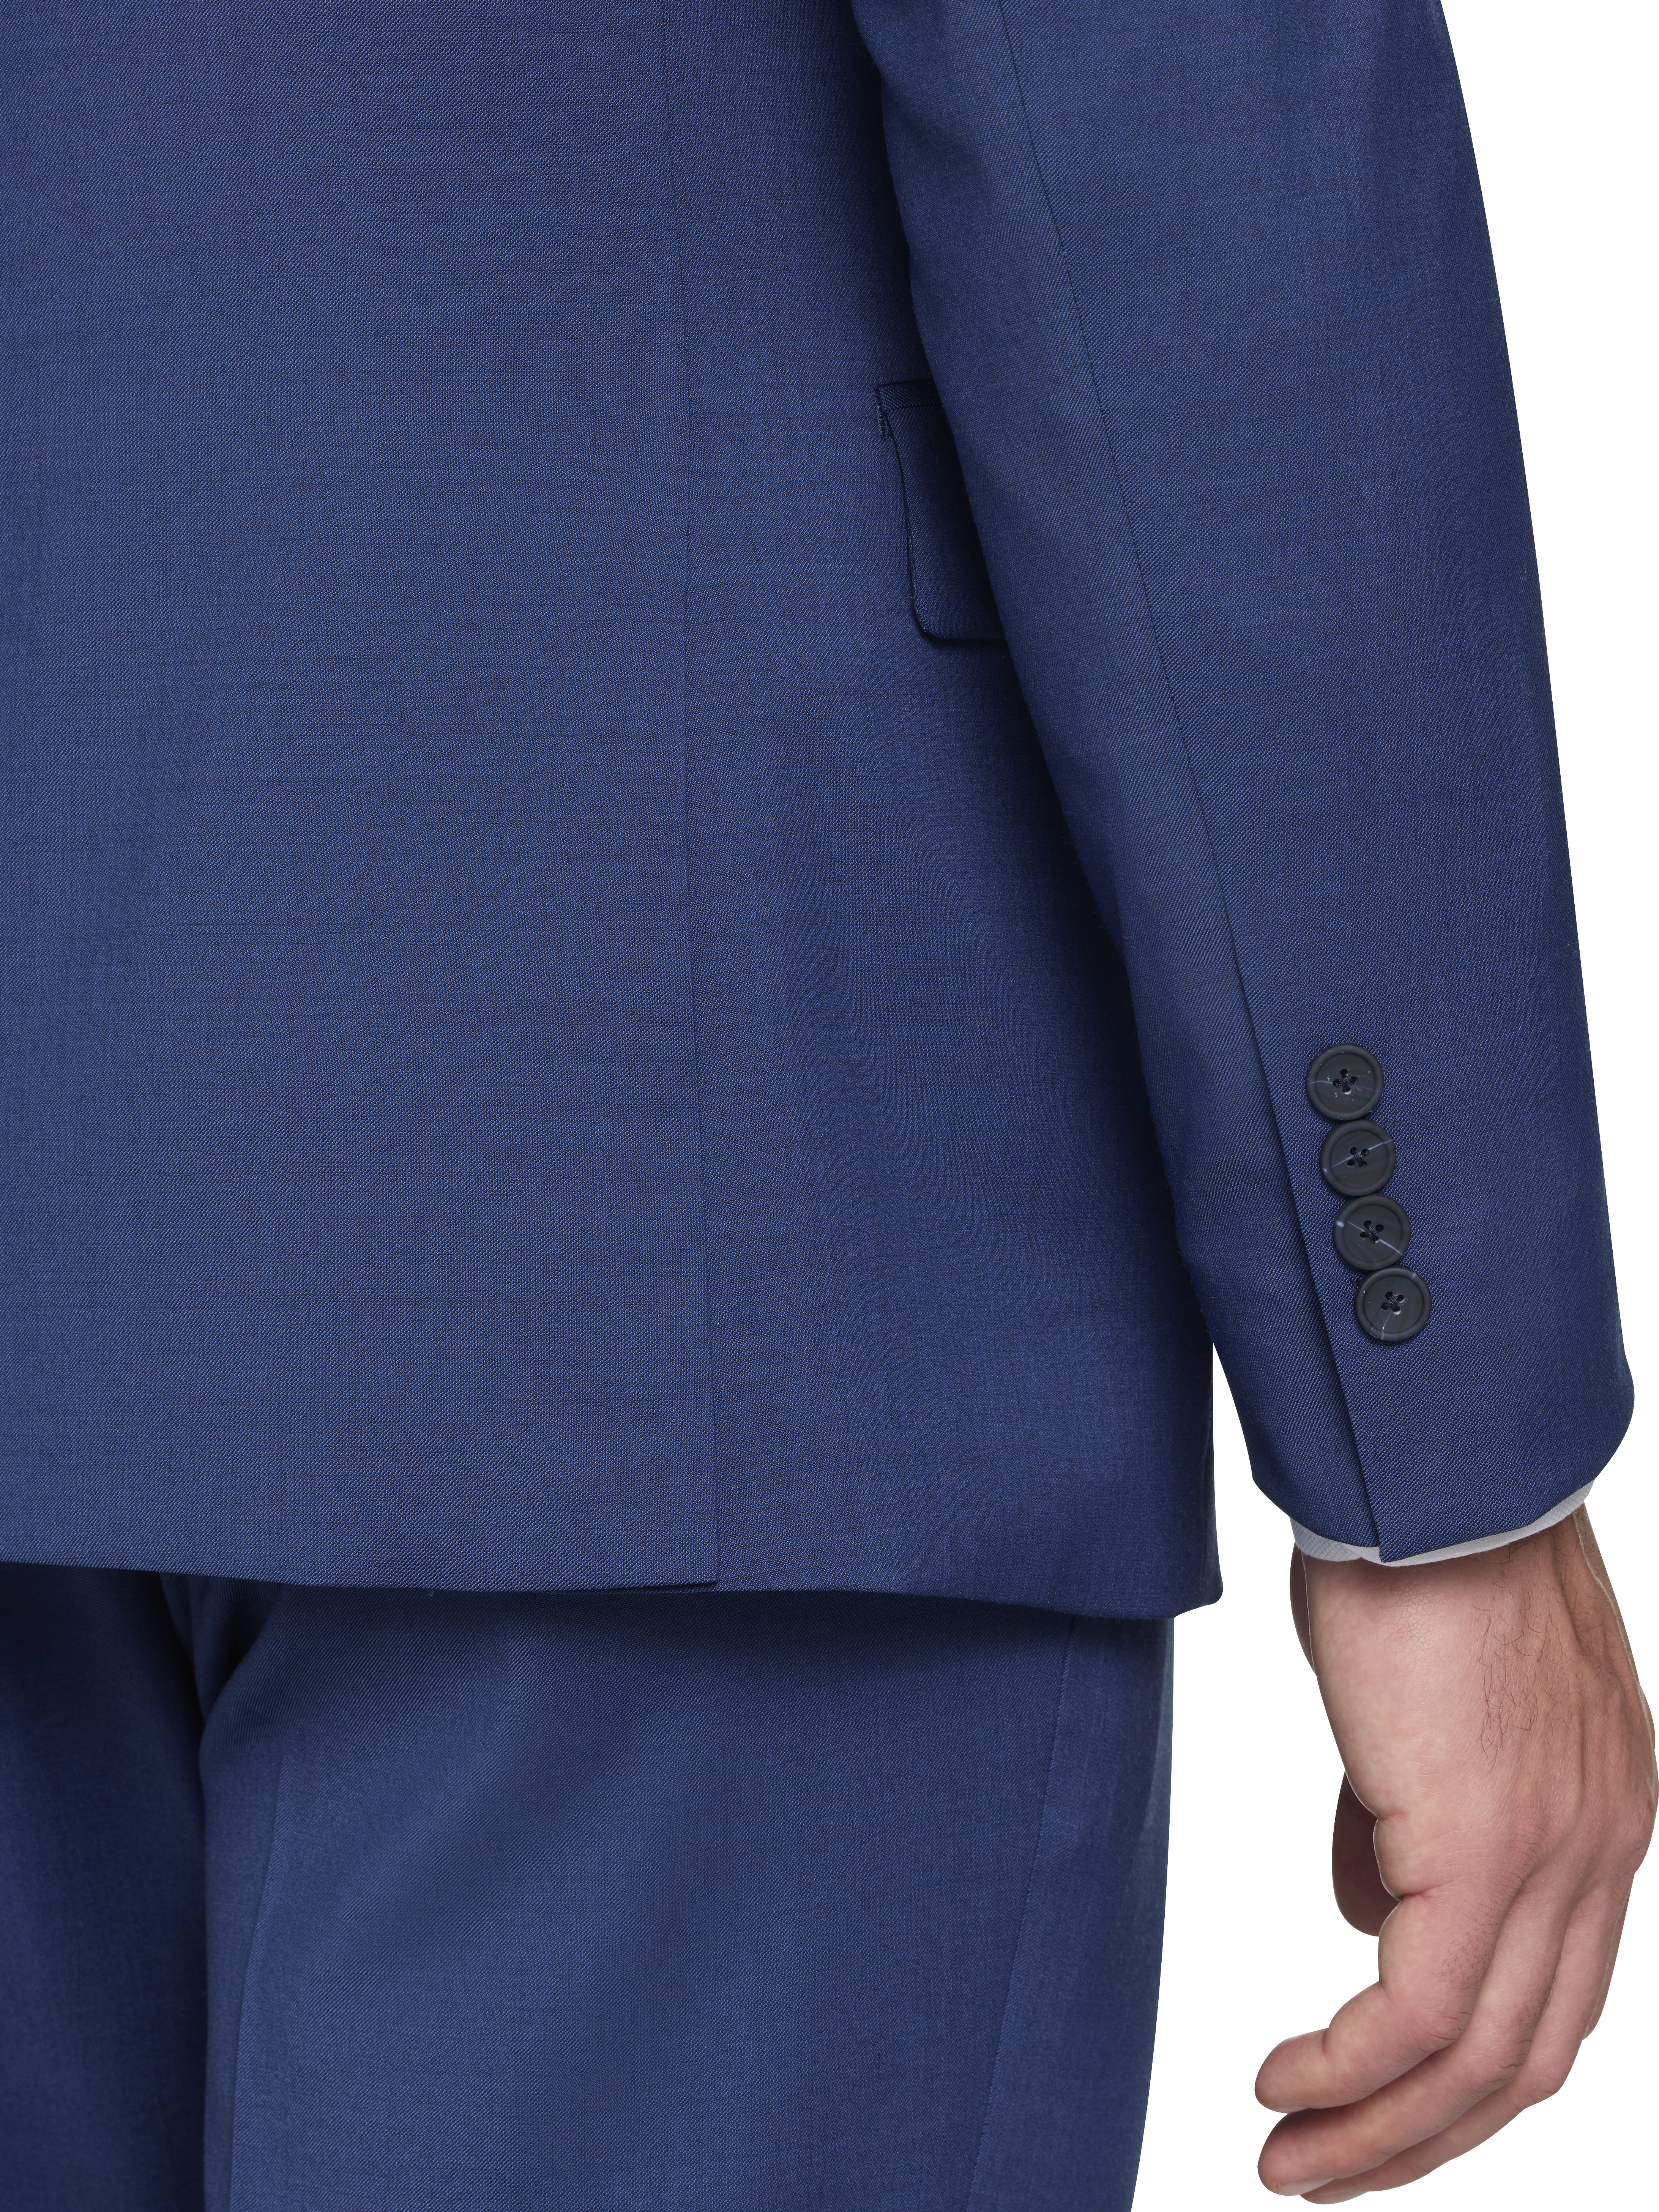 CHILLFLEX Slim Fit Notch Lapel Suit Separates Jacket